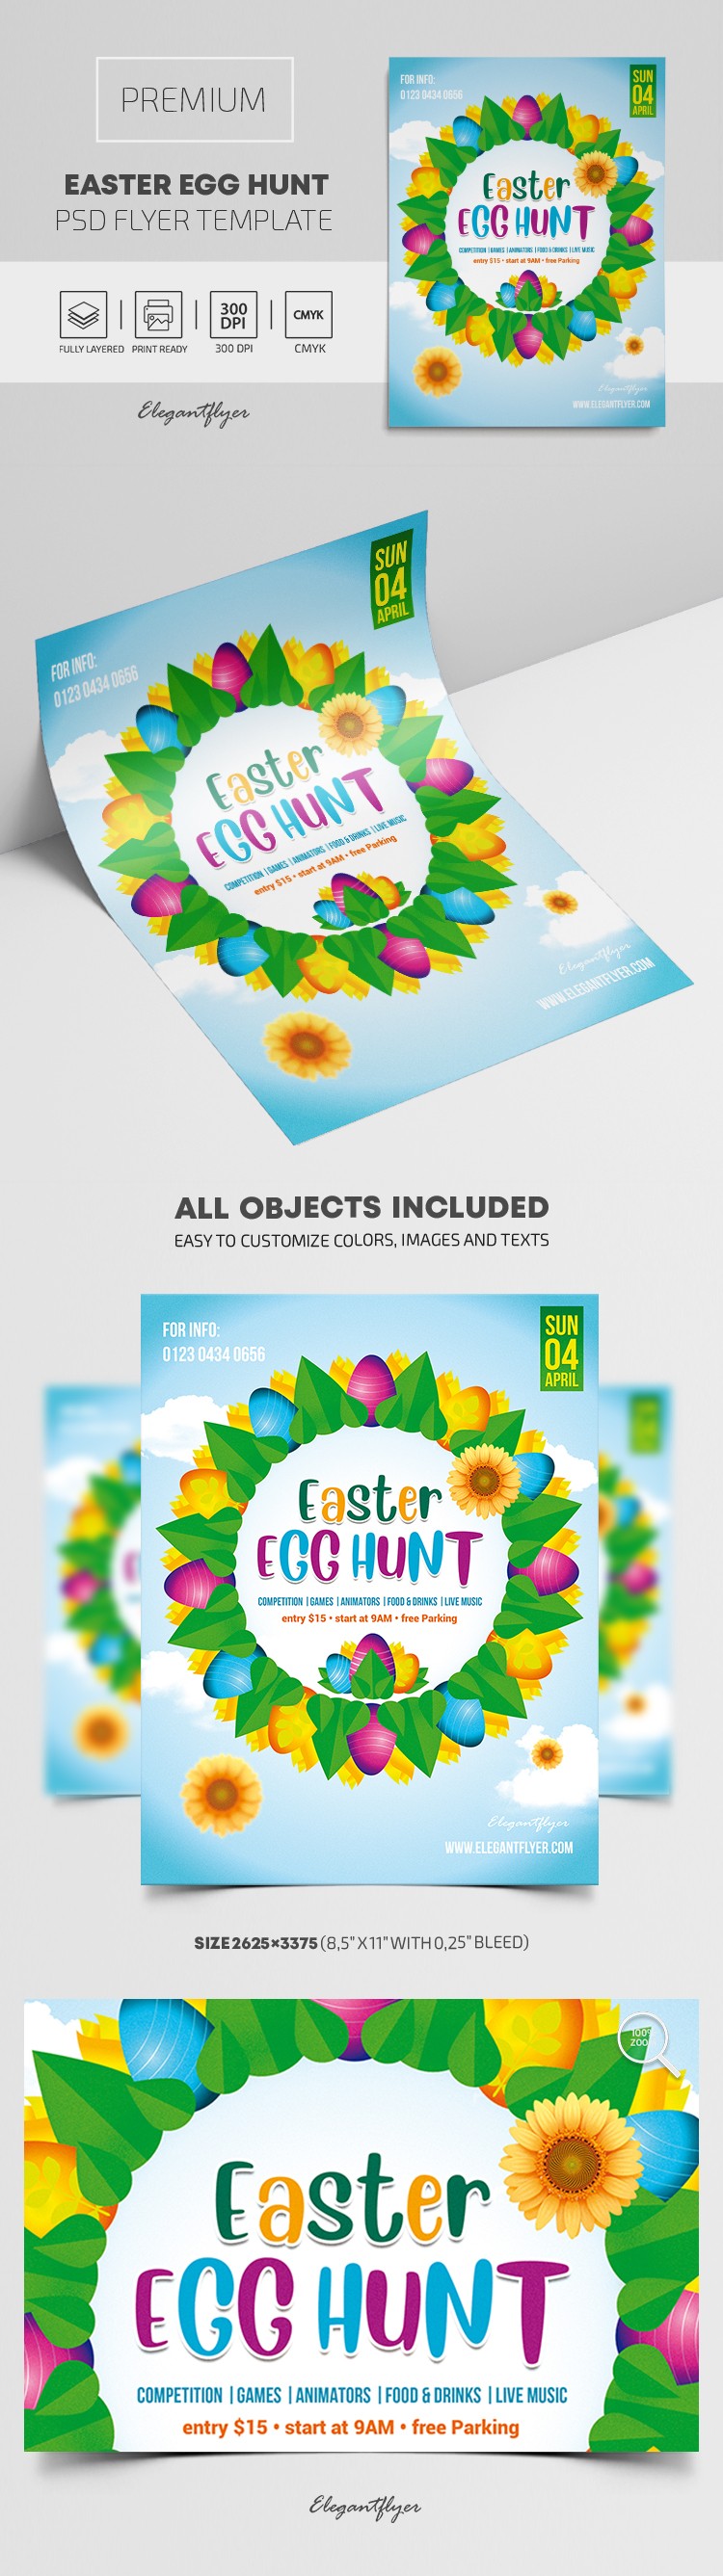 Easter Egg Hunt Flyer by ElegantFlyer